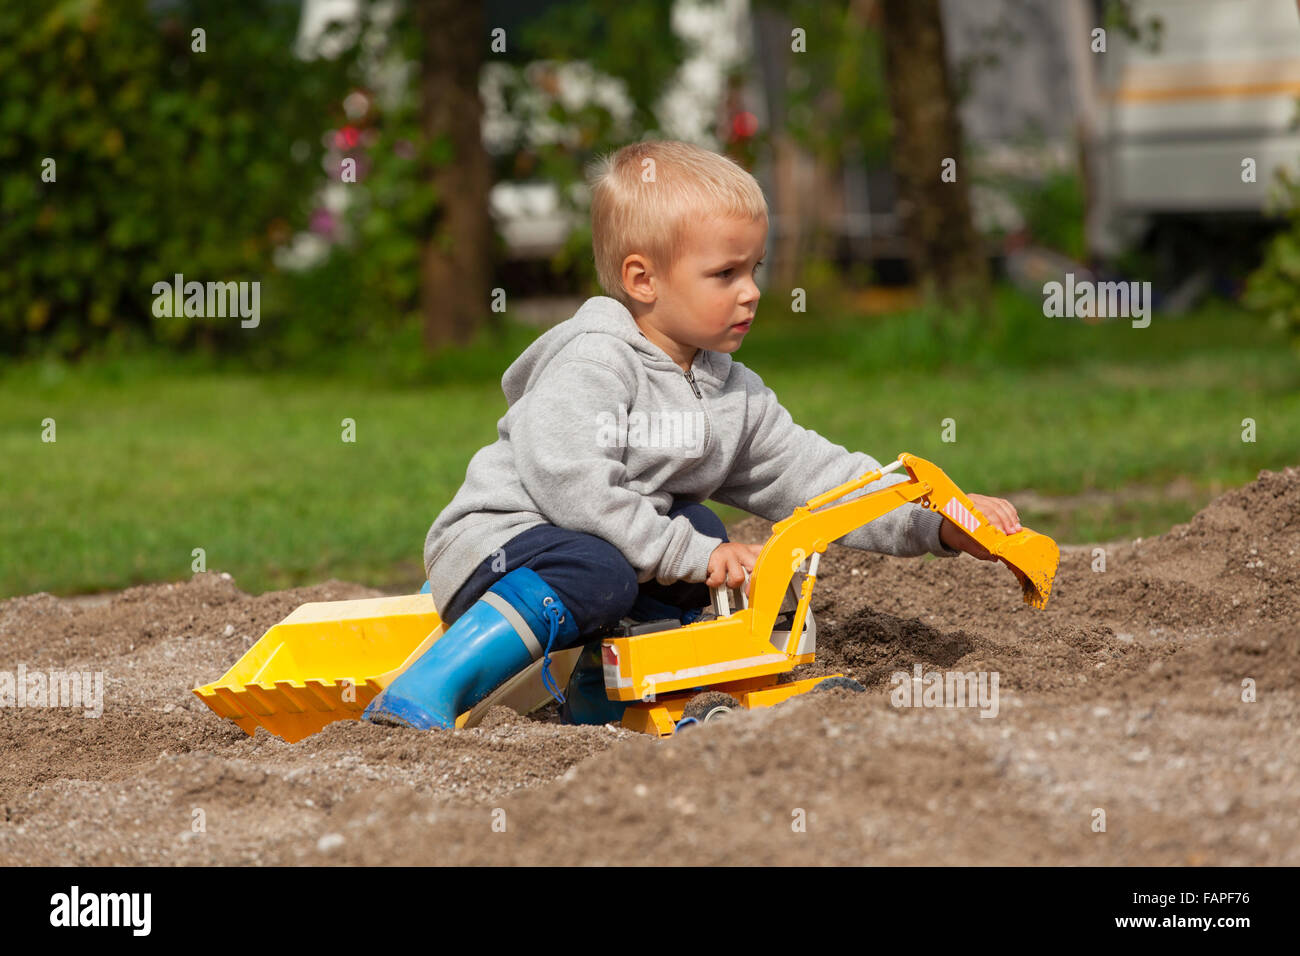 Kleiner Junge mit Kinder Bagger im Sandkasten spielen Stockfotografie -  Alamy